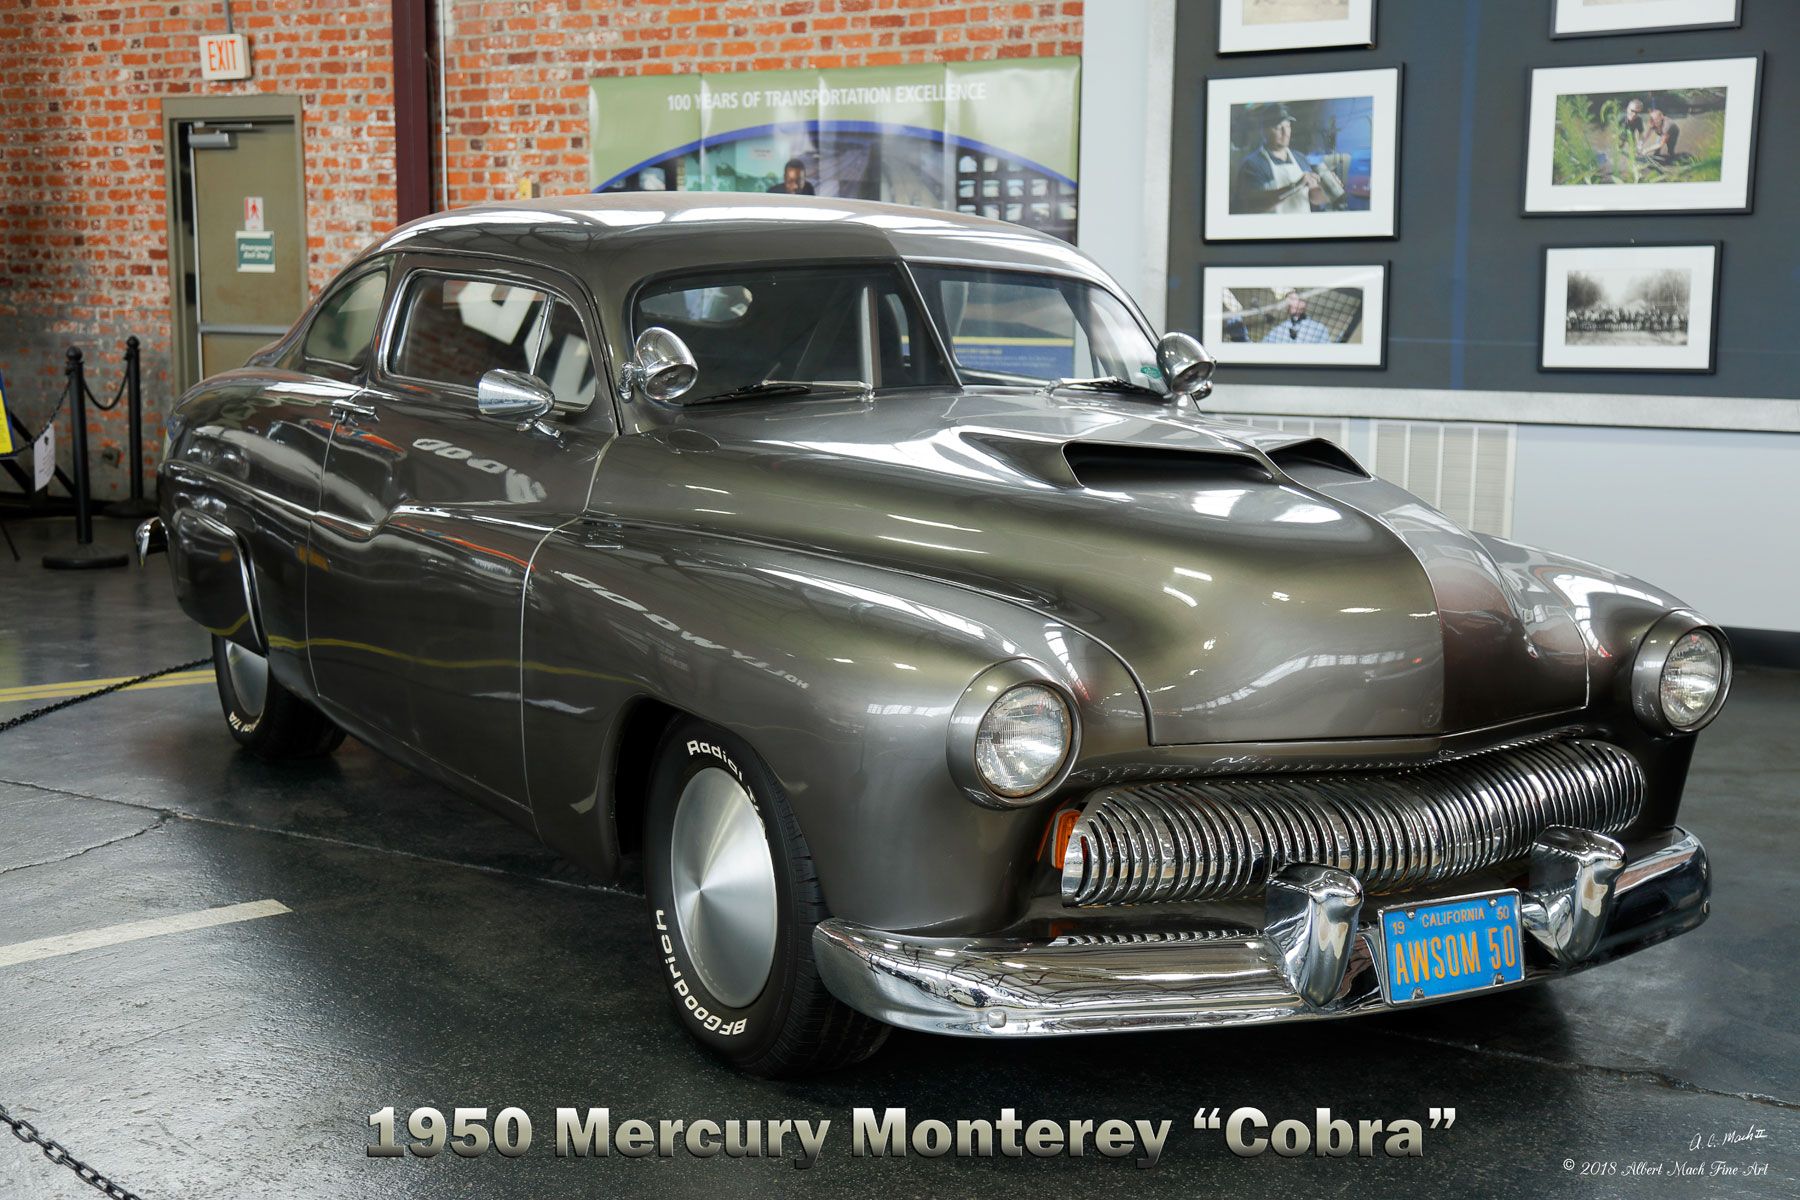 Vista del cuarto delantero del Mercury Monterey de 1950 utilizado en la película Cobra, protagonizada por Sylvester Stallone.